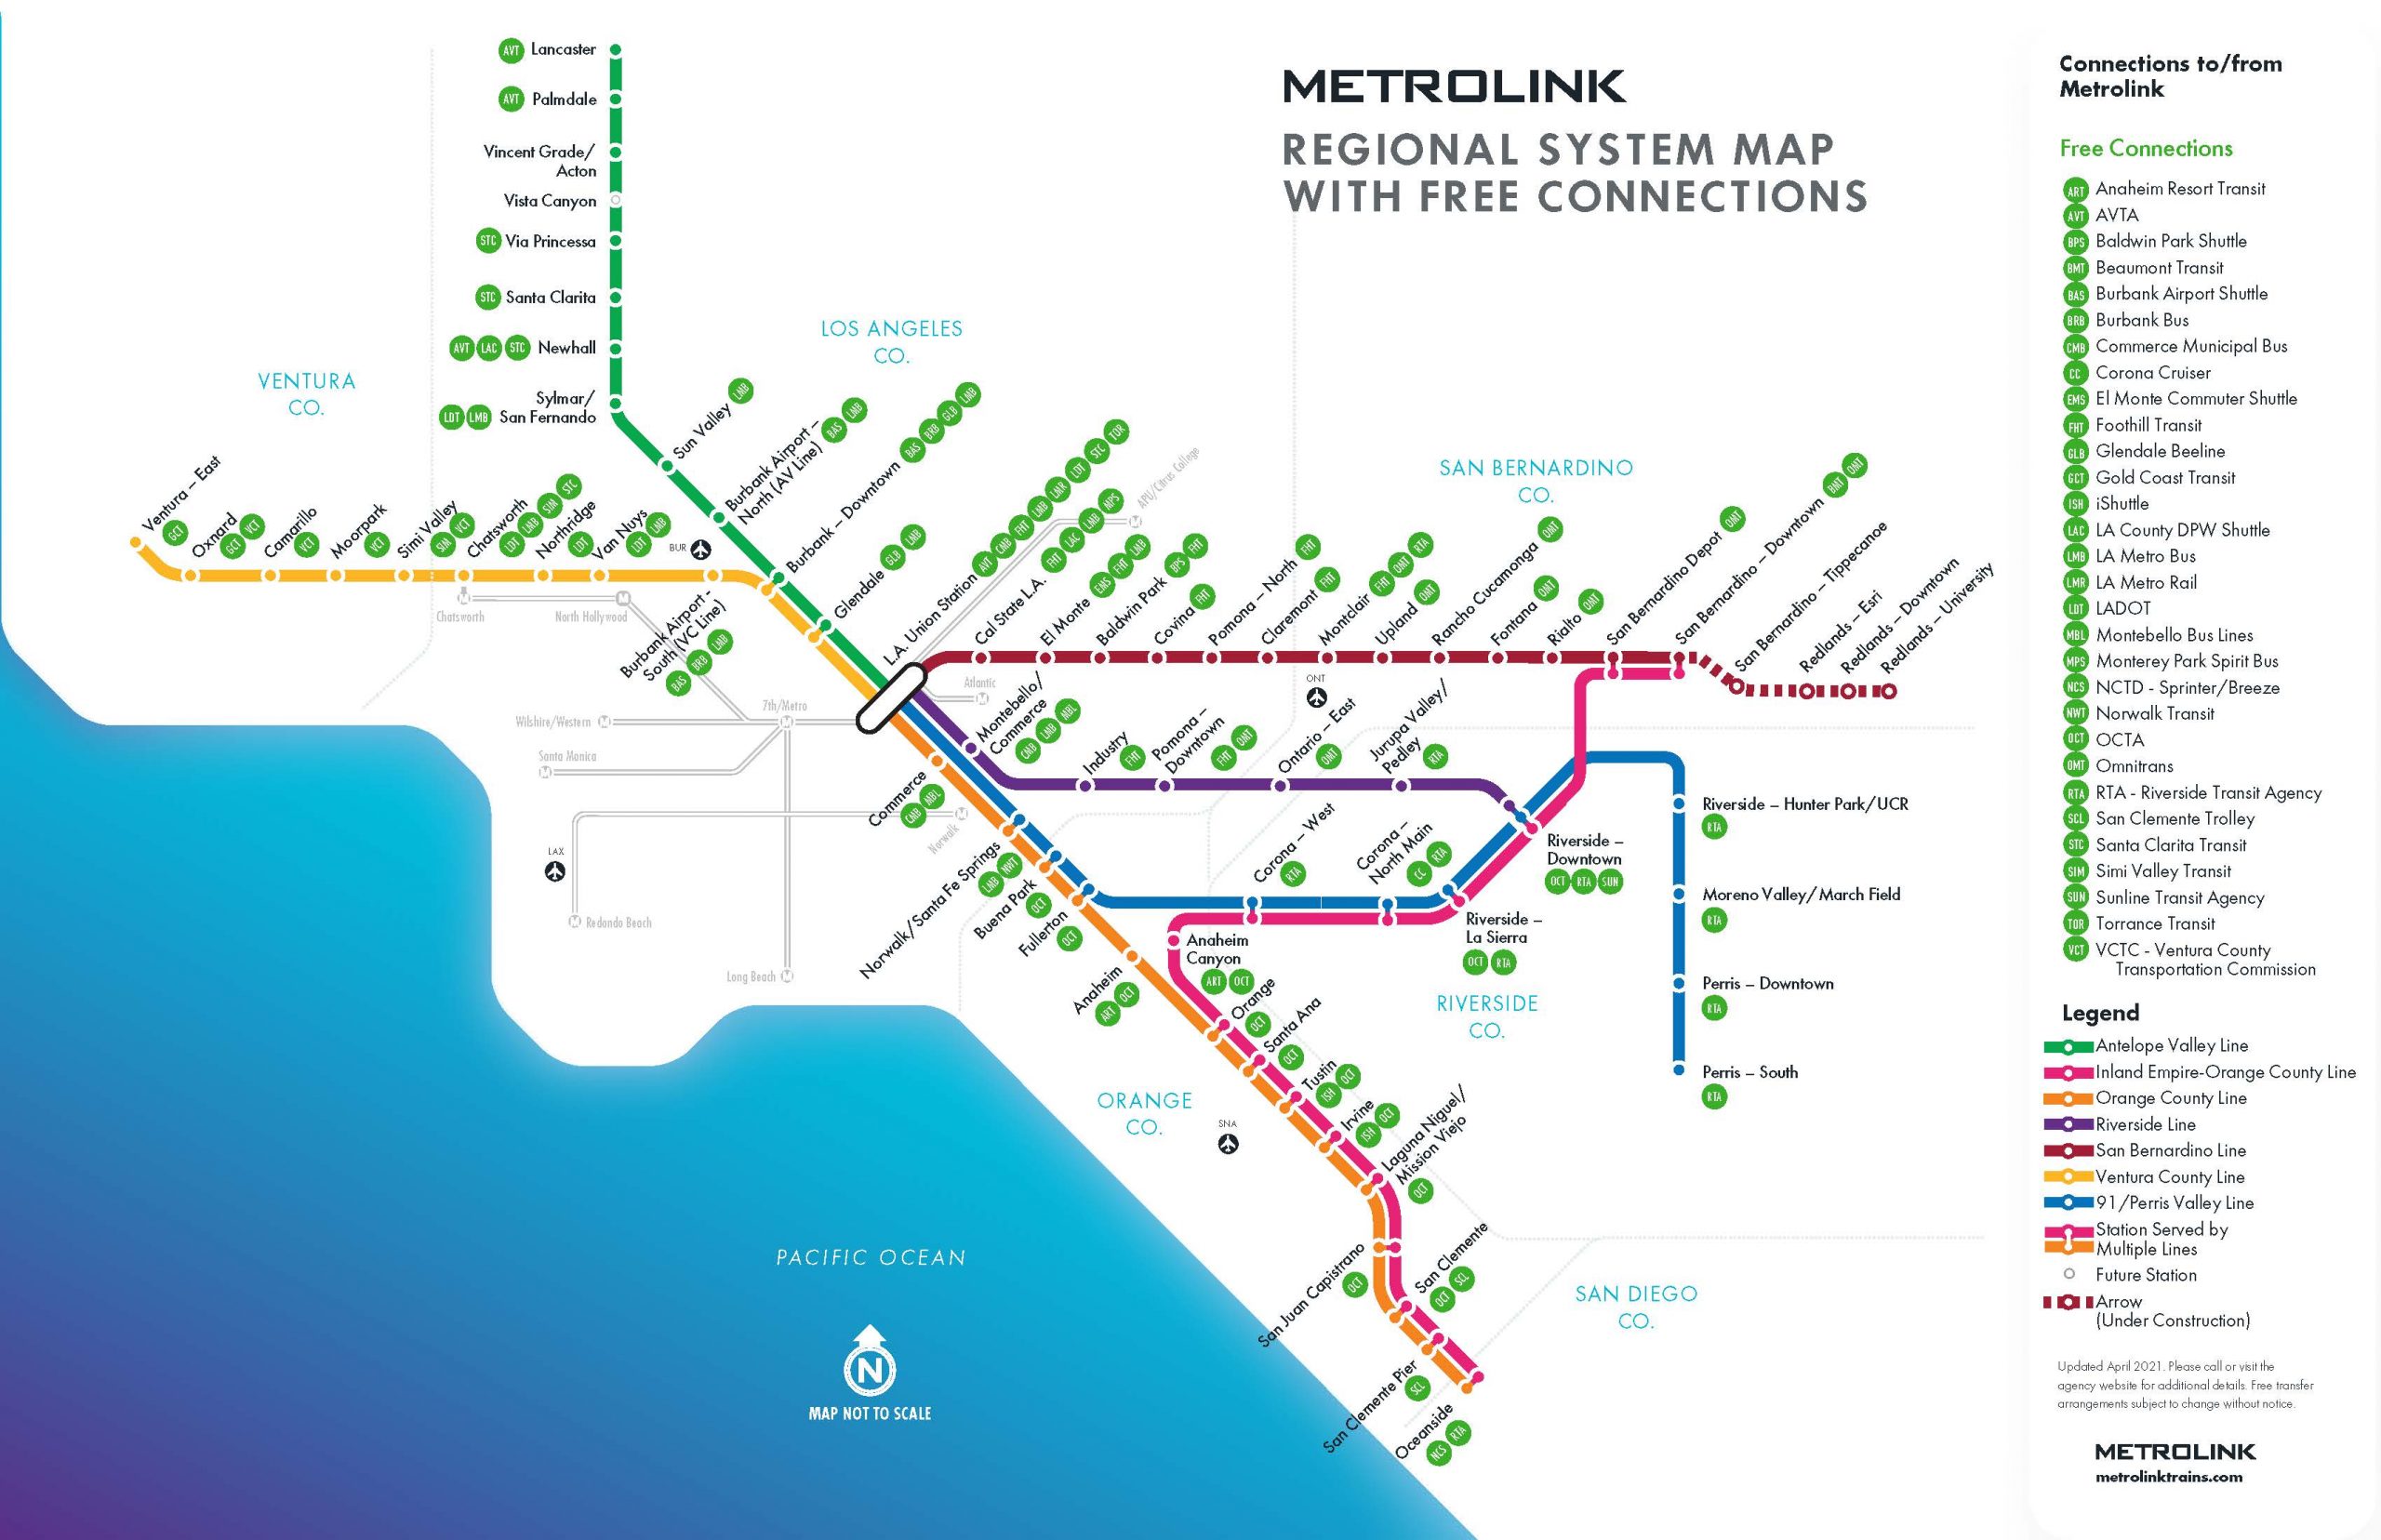 plan metrolink trip